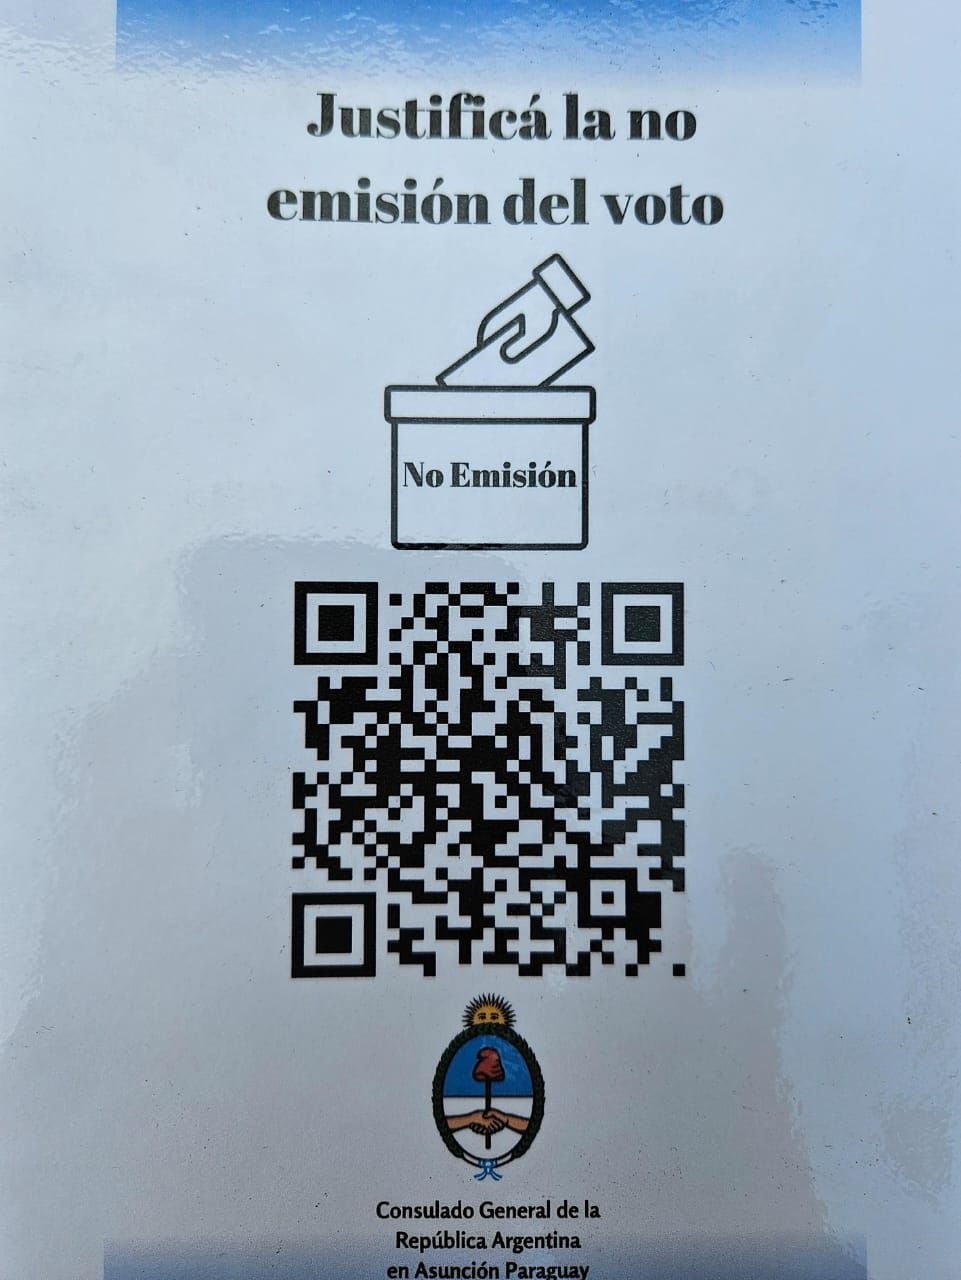 Código QR para justificar la no emisión del voto en las elecciones presidenciales de Argentina en Paraguay.